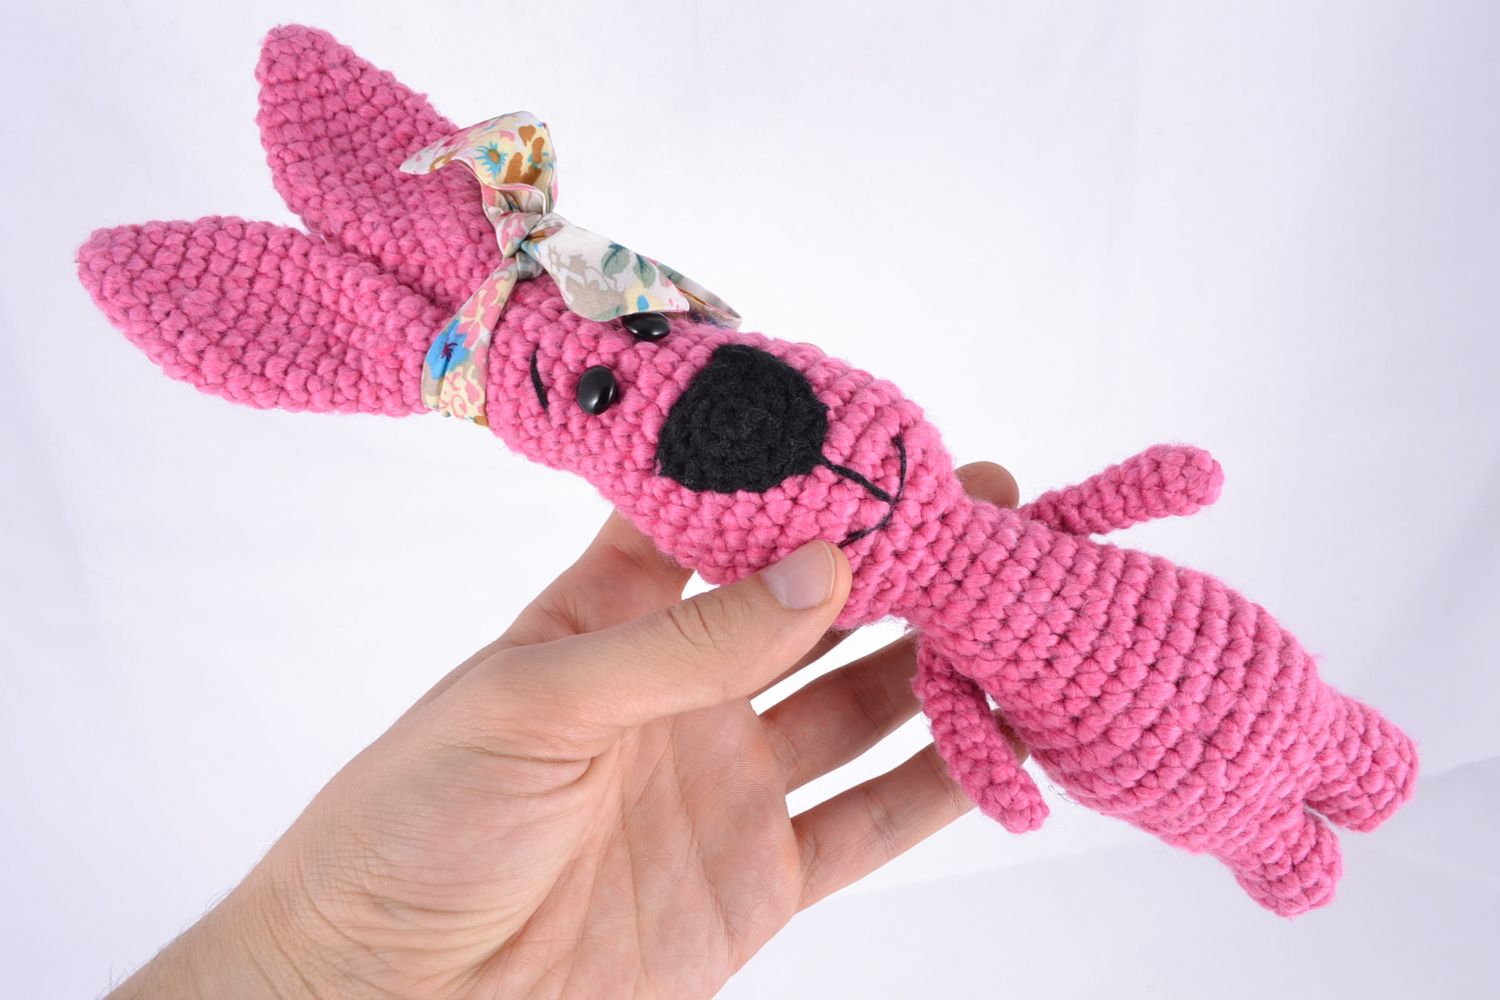 Soft crochet toy rabbit photo 2